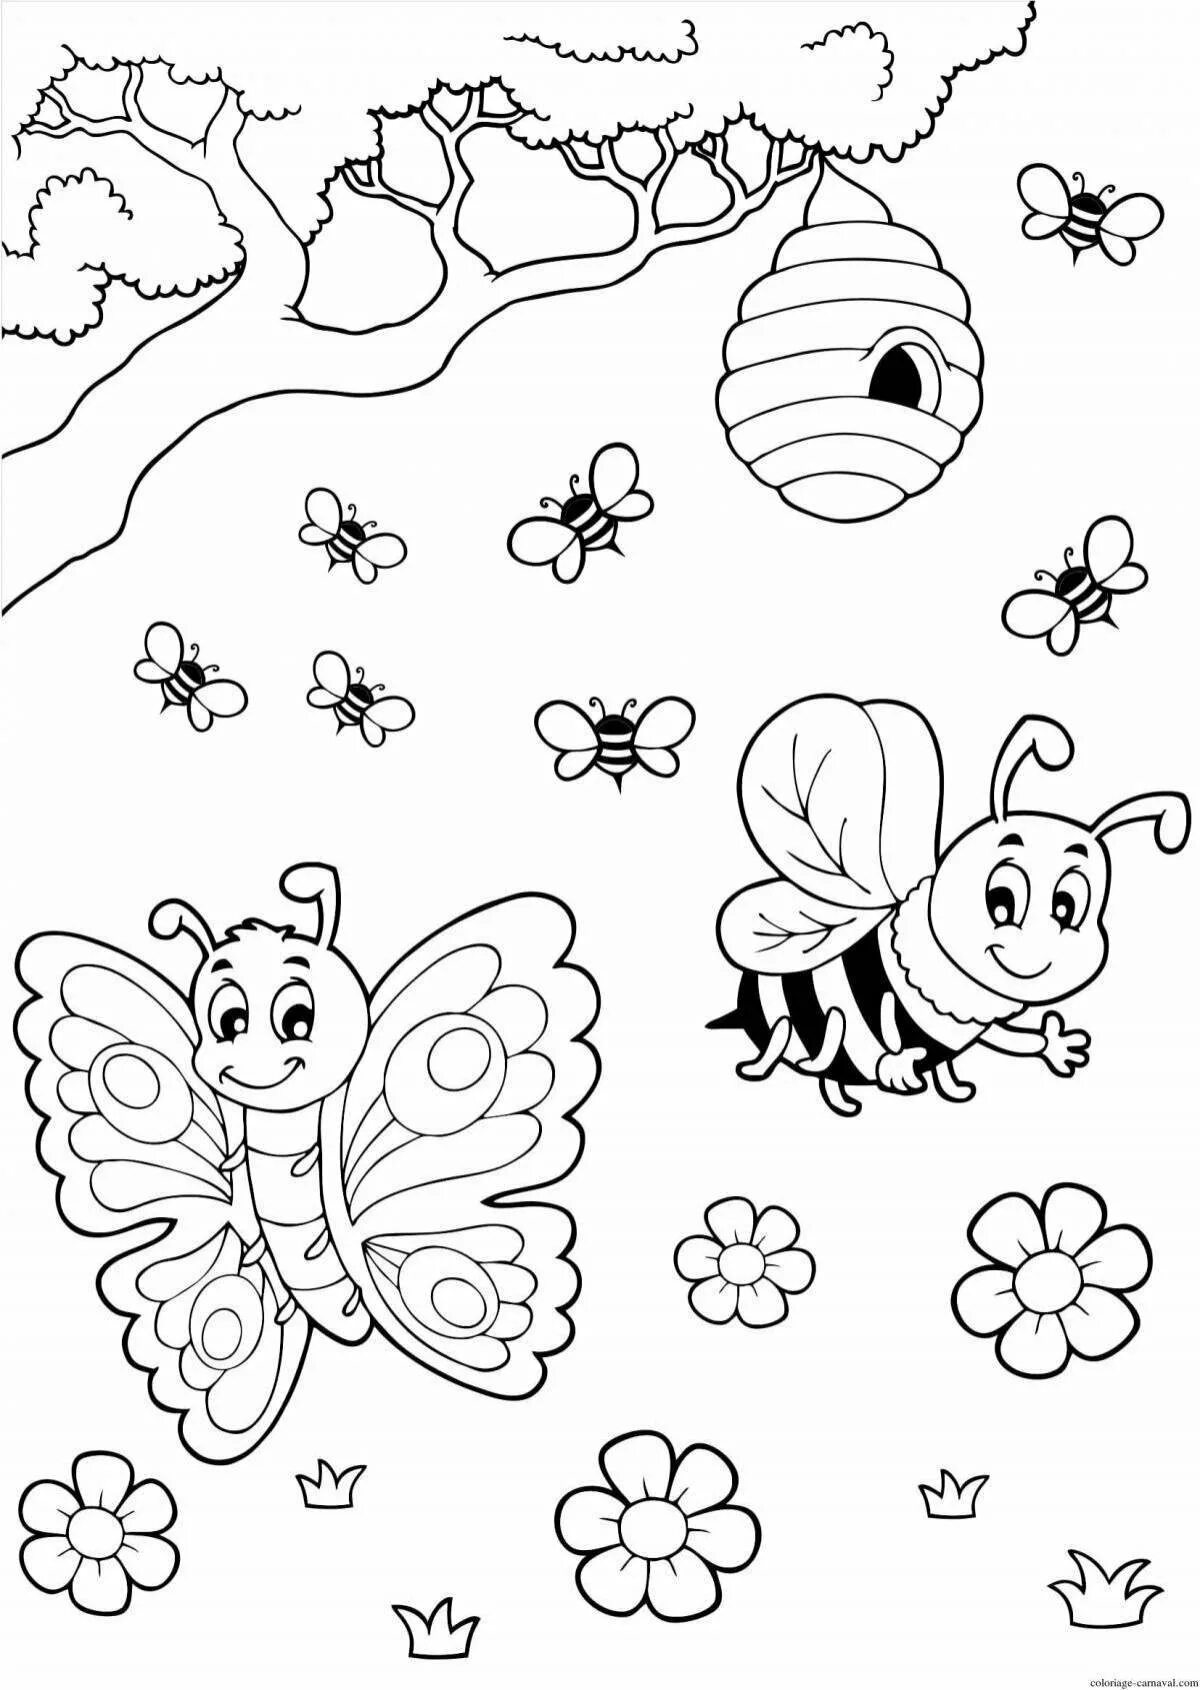 Раскраска насекомые для детей 3 лет. Насекомые раскраска для детей. Раскраска насекомые для малышей. Раскраски насекомые для детей 4-5 лет. Раскраска для детей 3 лет насекомые.